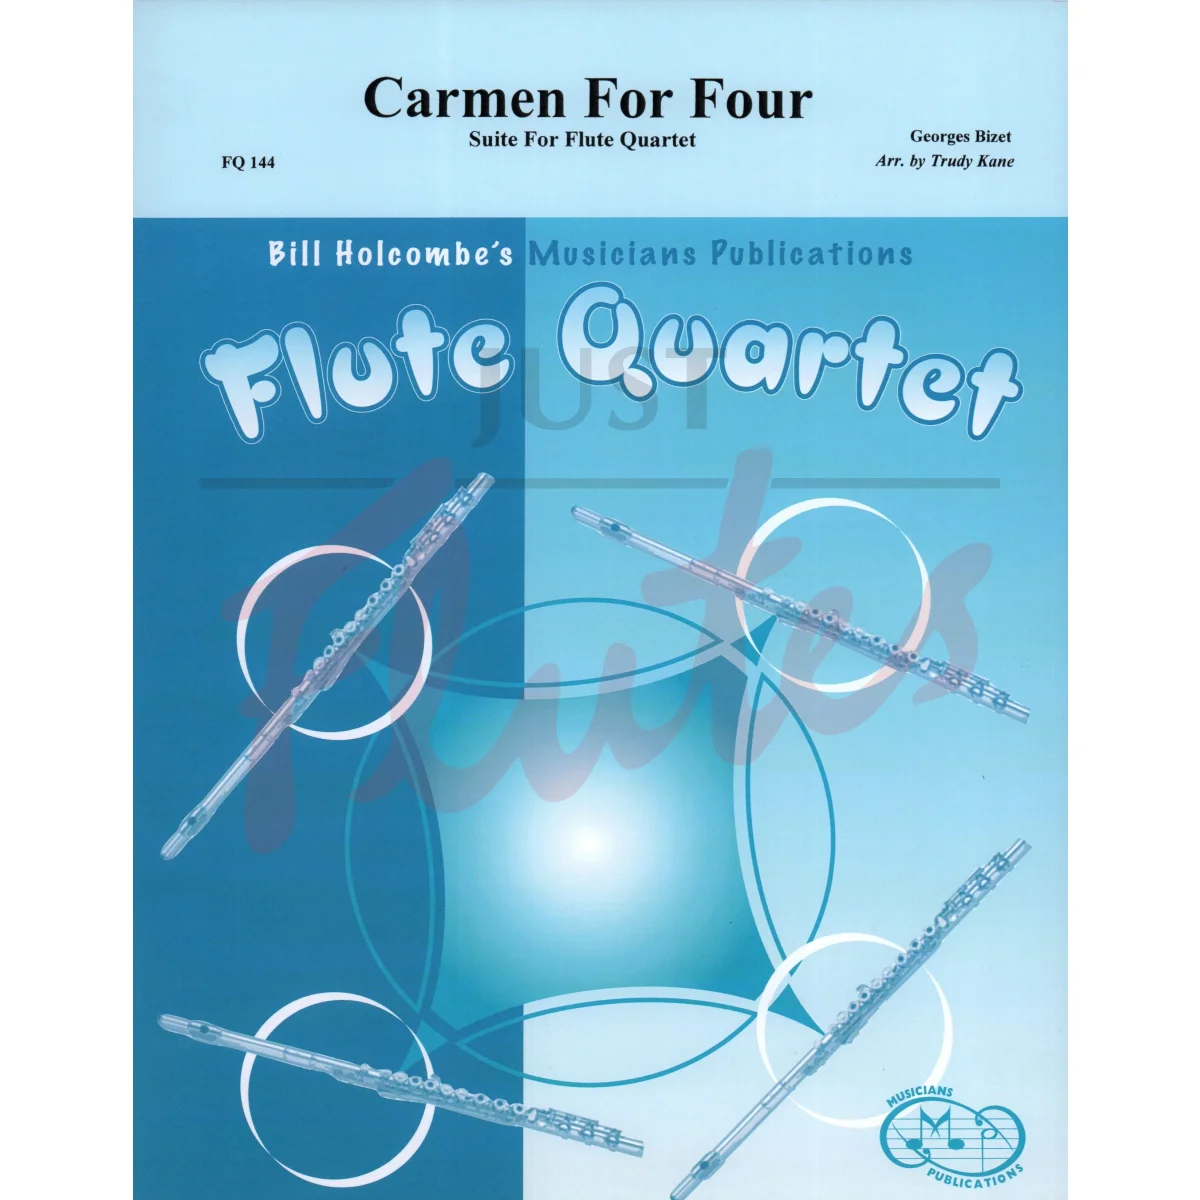 Carmen for Four: Suite for Flute Quartet